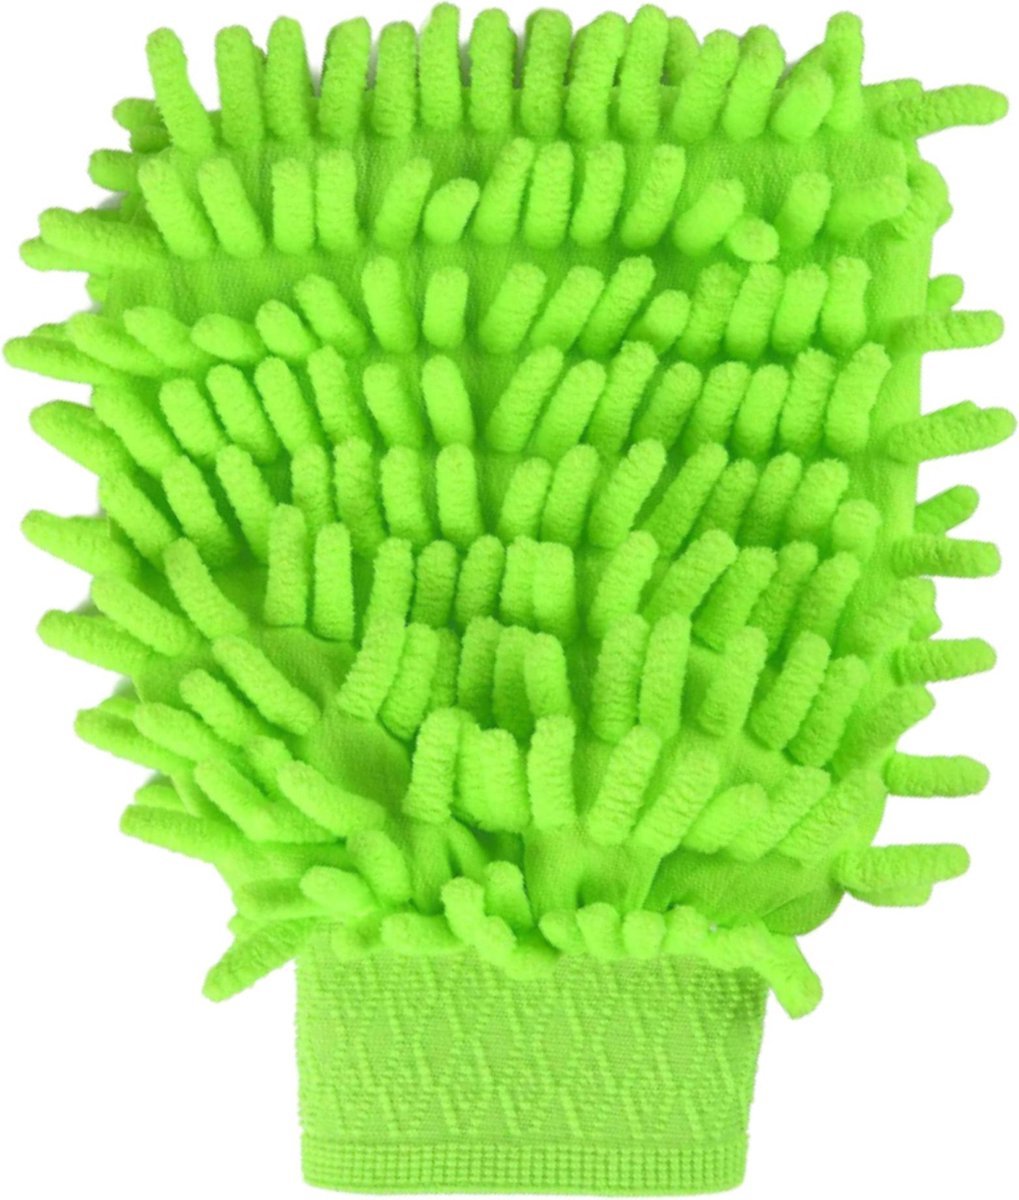 Jumada's Dubbelzijge schoonmaak handschoenen - Microvezel - Schoonmaken - Handschoenen - Groen - 2 stuks